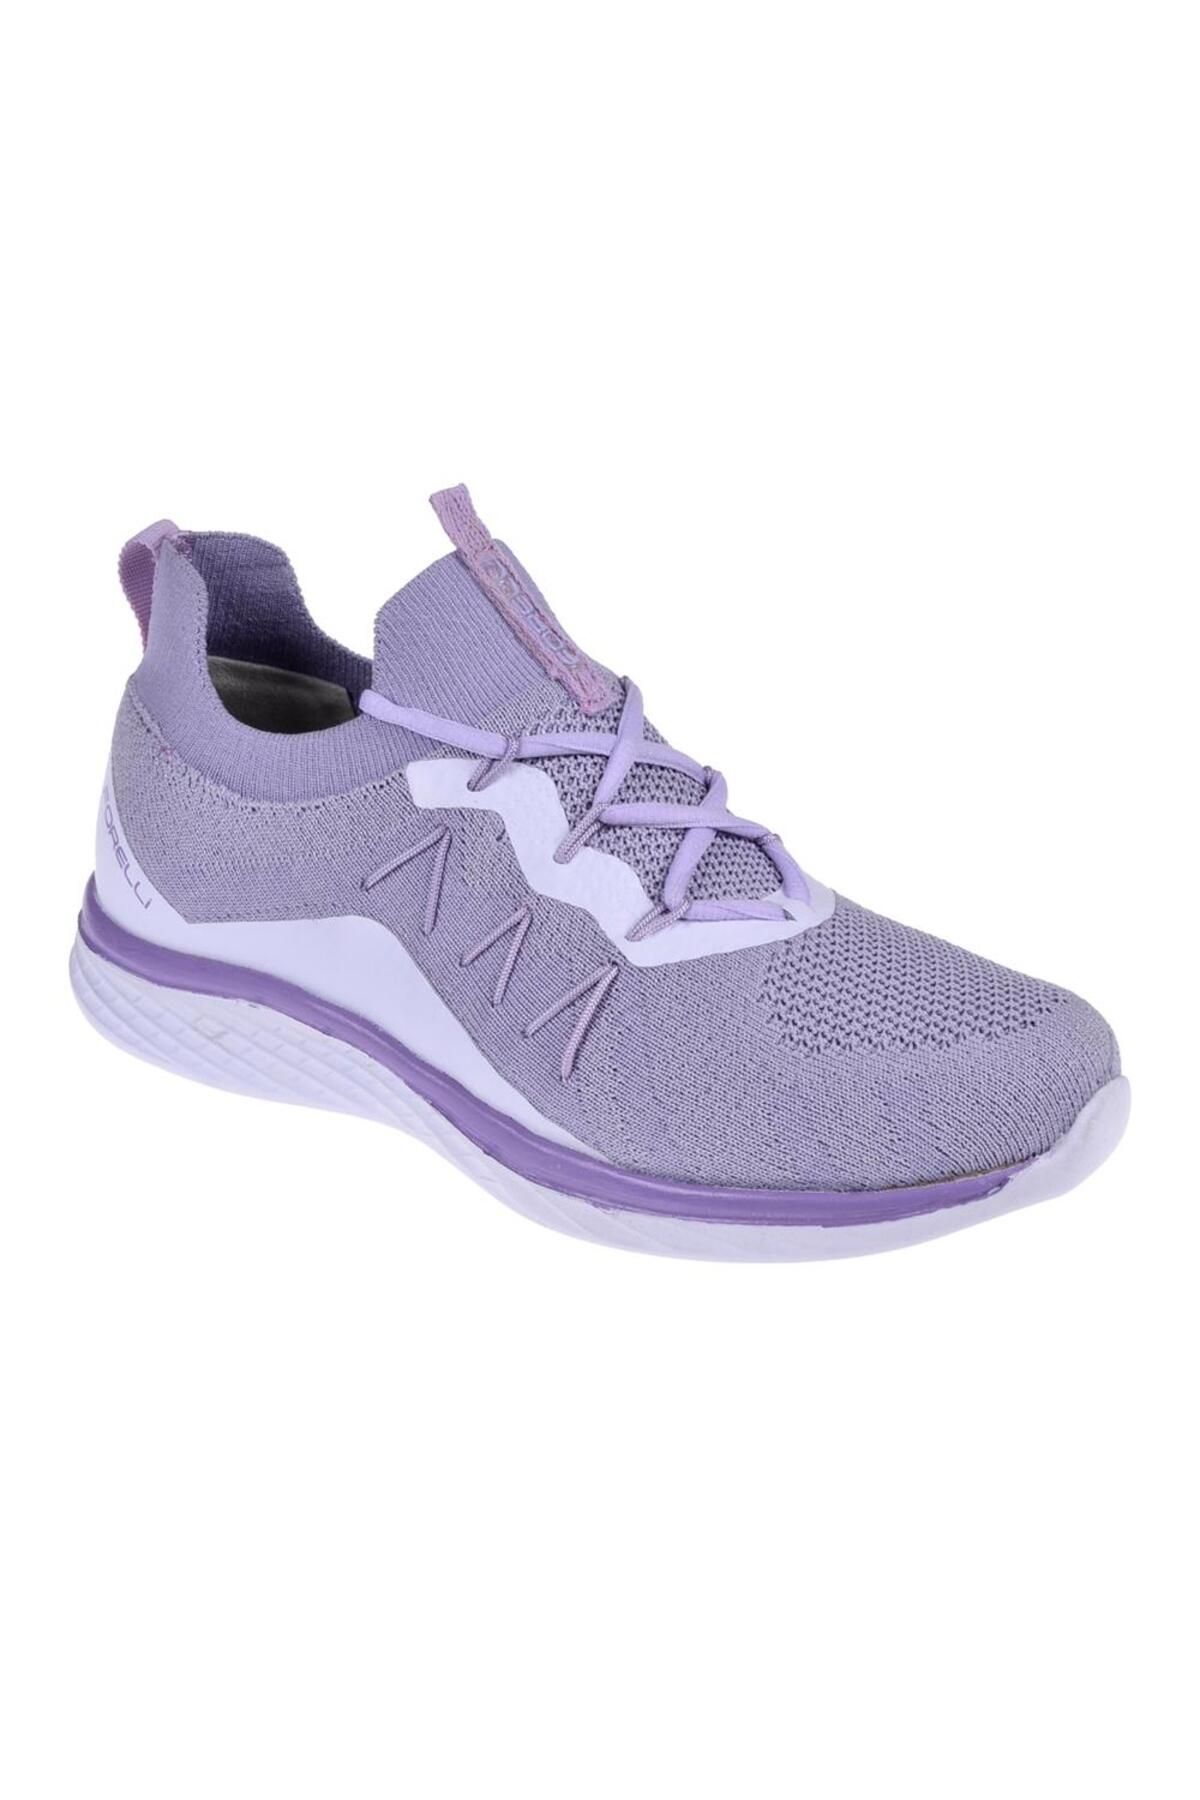 Forelli Comfort Triko Kadın Spor Ayakkabı Sneaker For-nil-g Lila